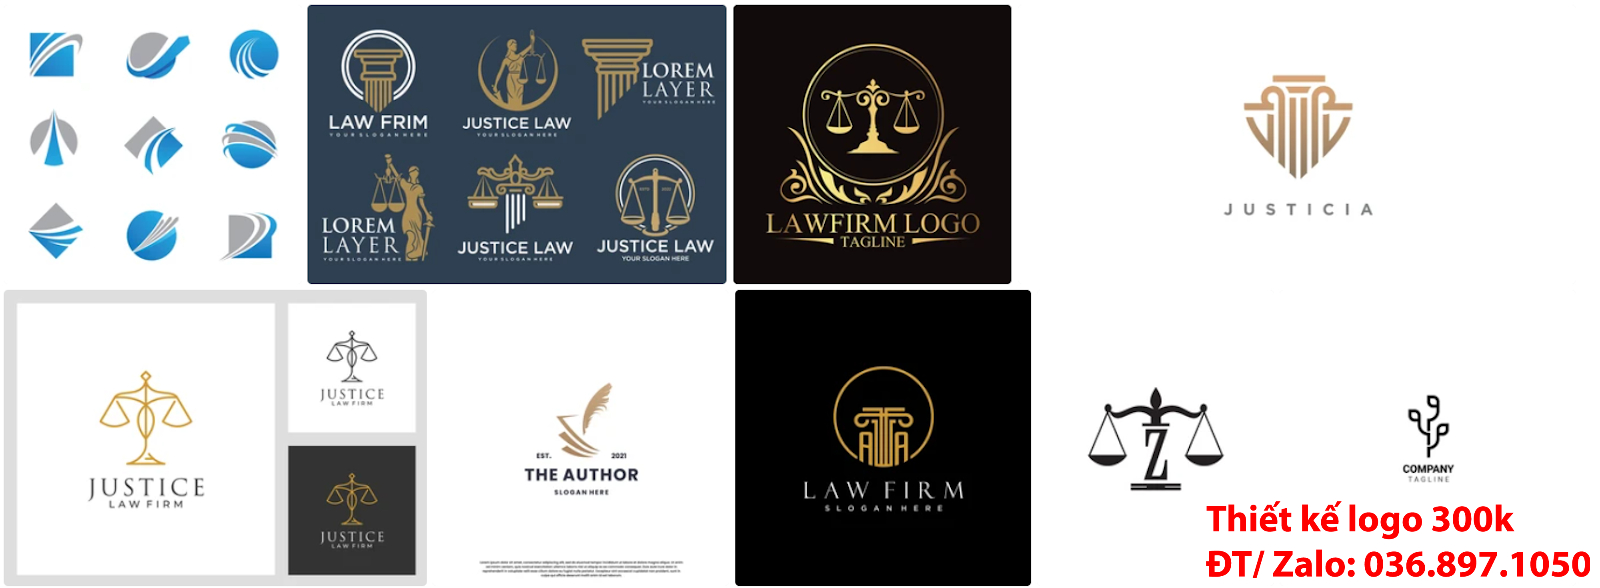 Mẫu Thiết Kế Logo công ty luật sư đẹp giá rẻ 300k tại khu vực TpHCM chất lượng